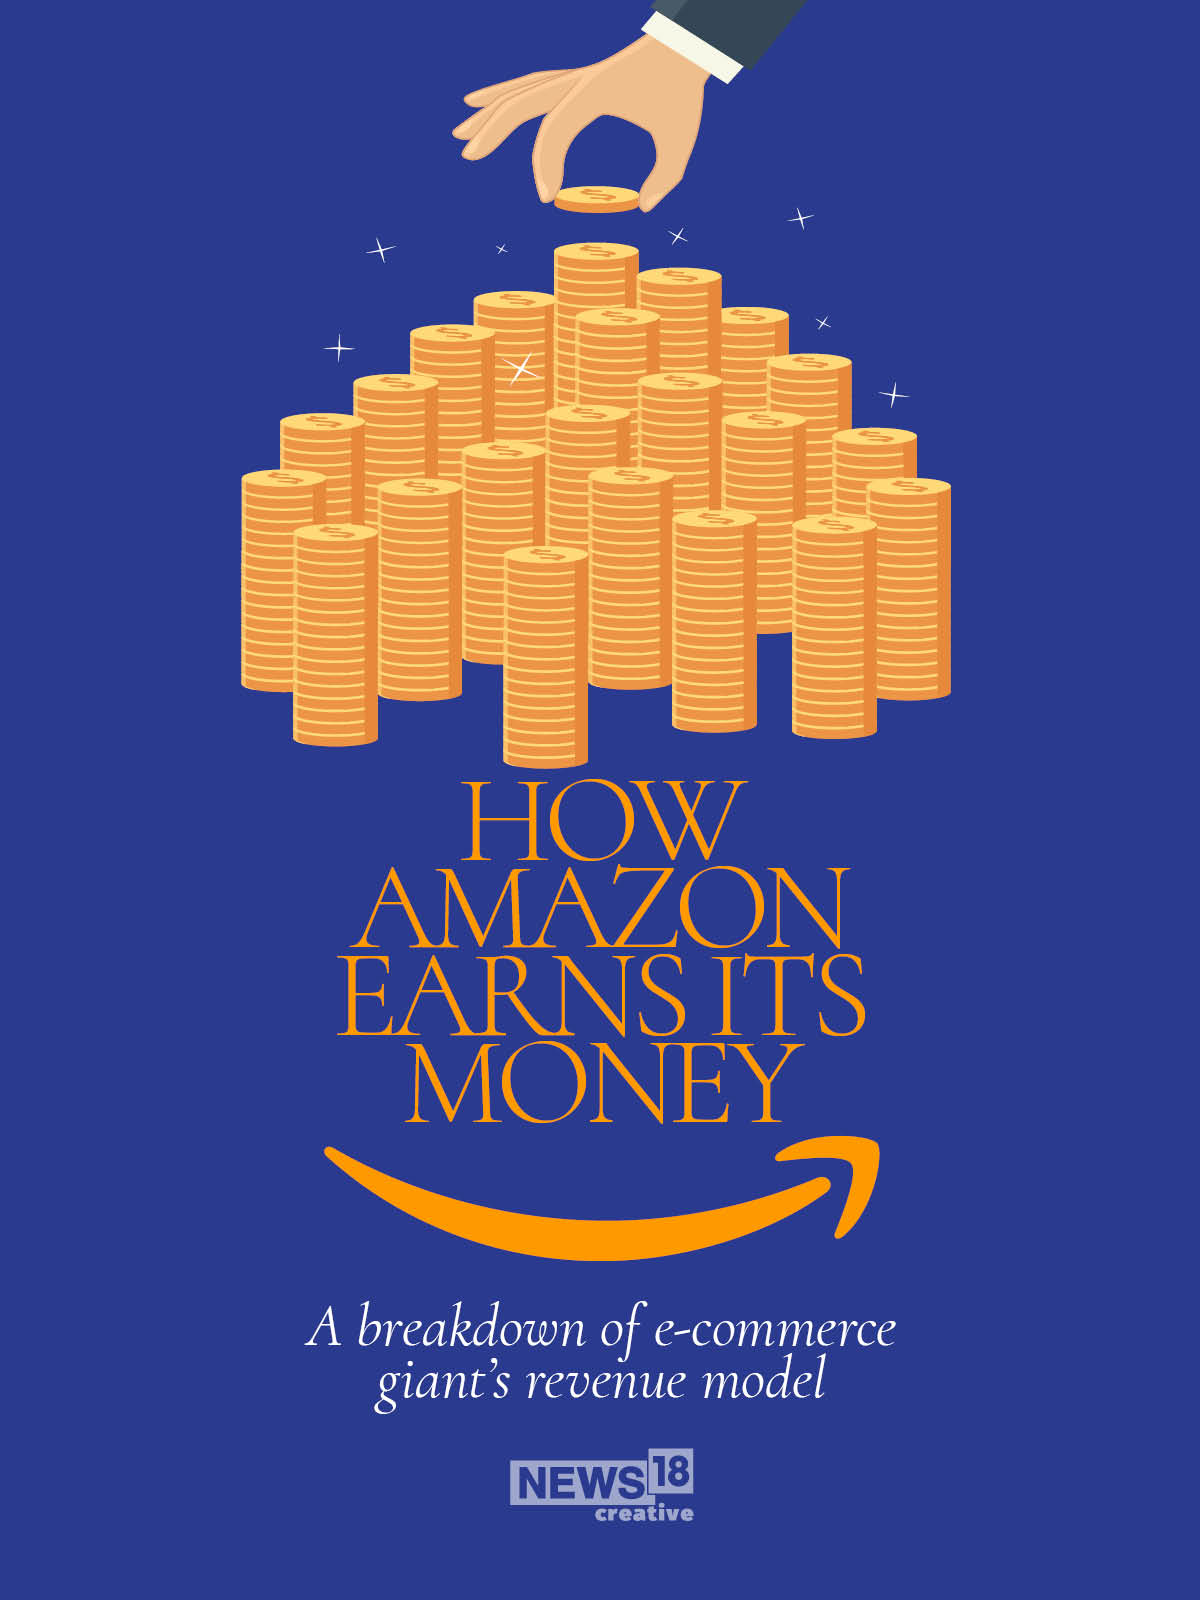 How Amazon makes its money